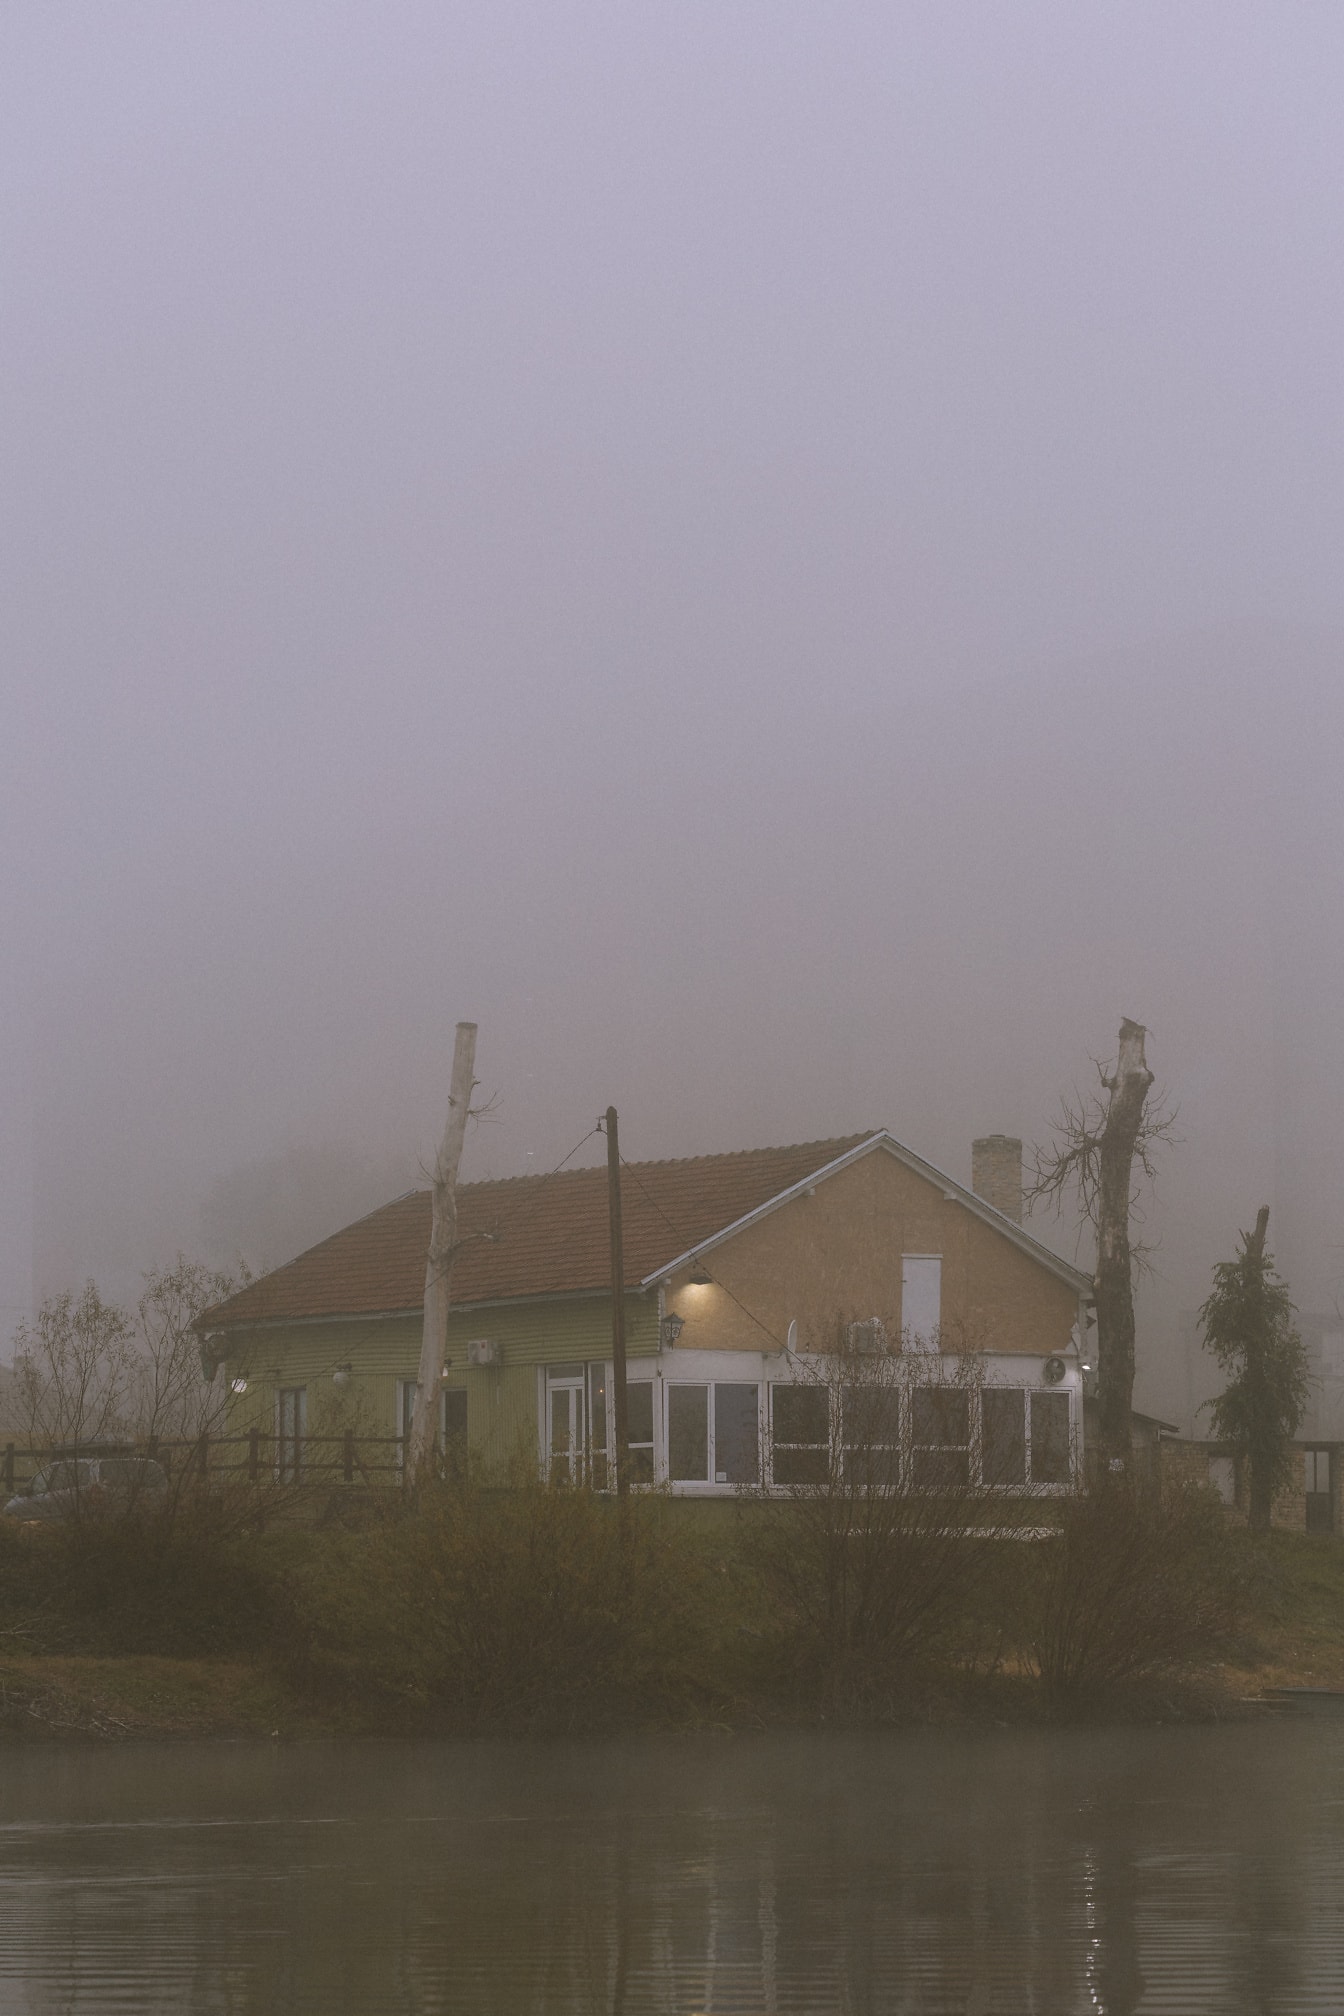 배경에 나무가 있는 짙은 안개 속의 집